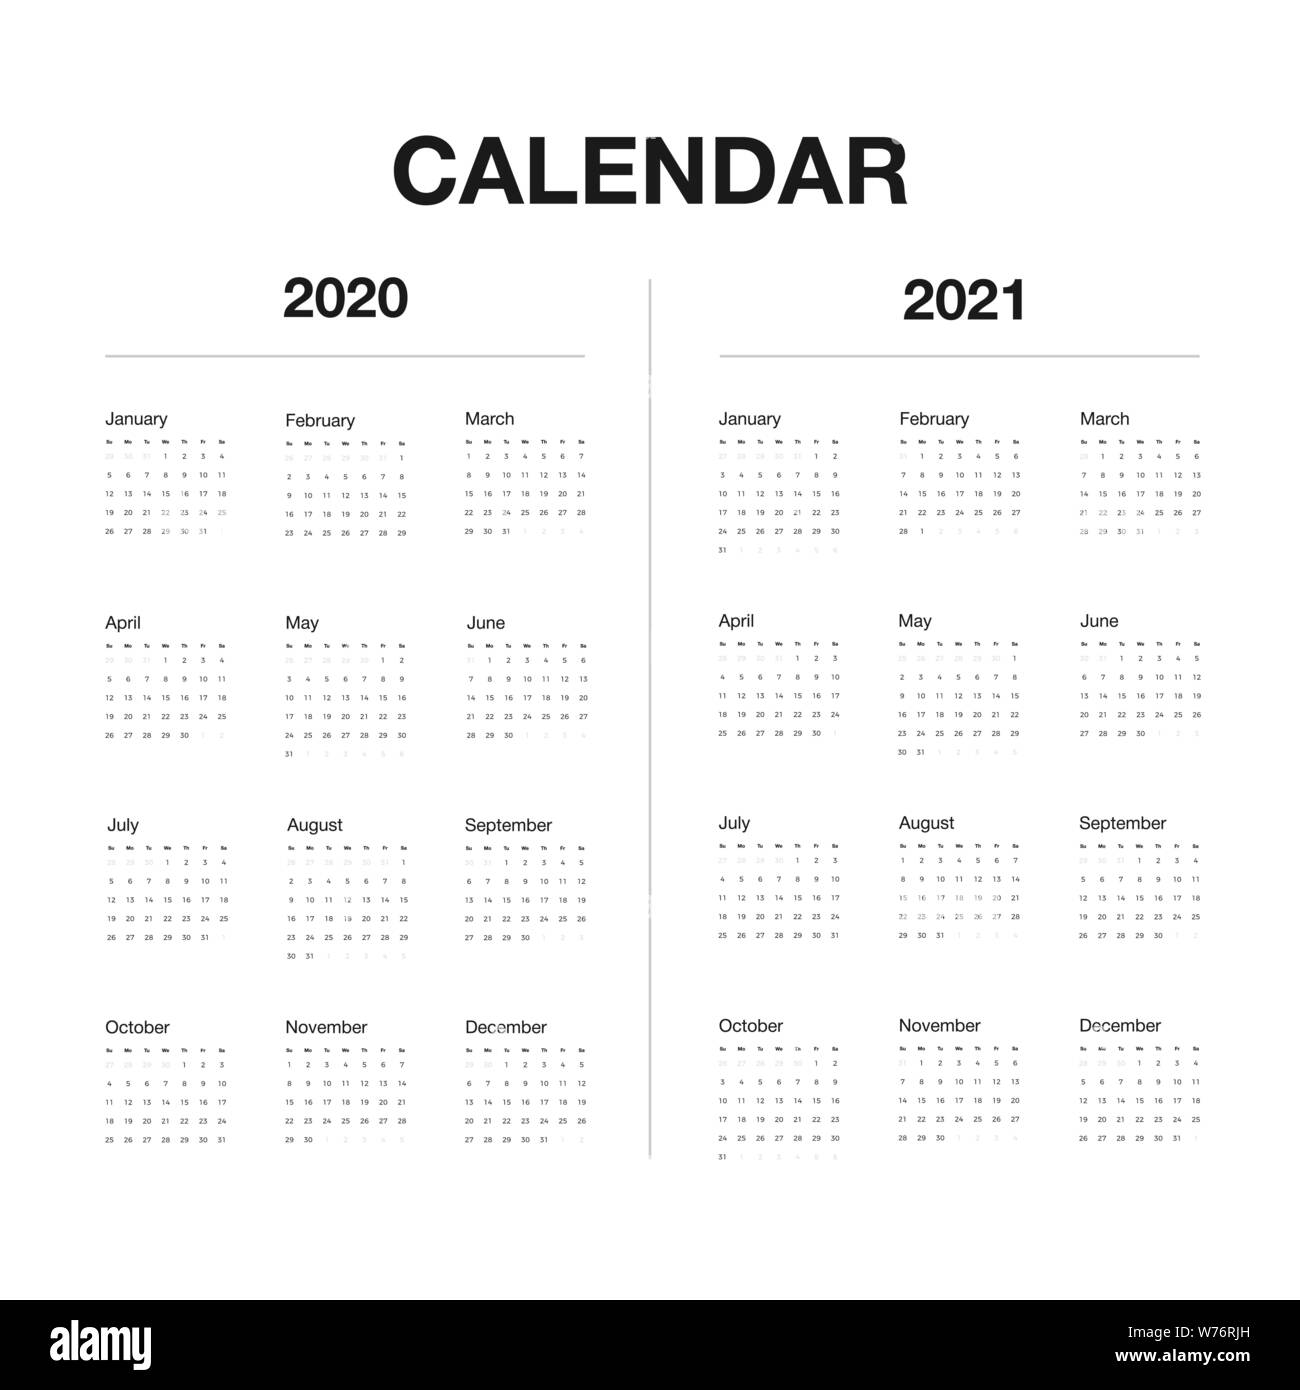 Minimalistischer Schreibtisch Kalender 2020 und 2021 Jahren. Design von Kalender mit englischen Namen der Monate und Wochen. Vector Illustration Stock Vektor